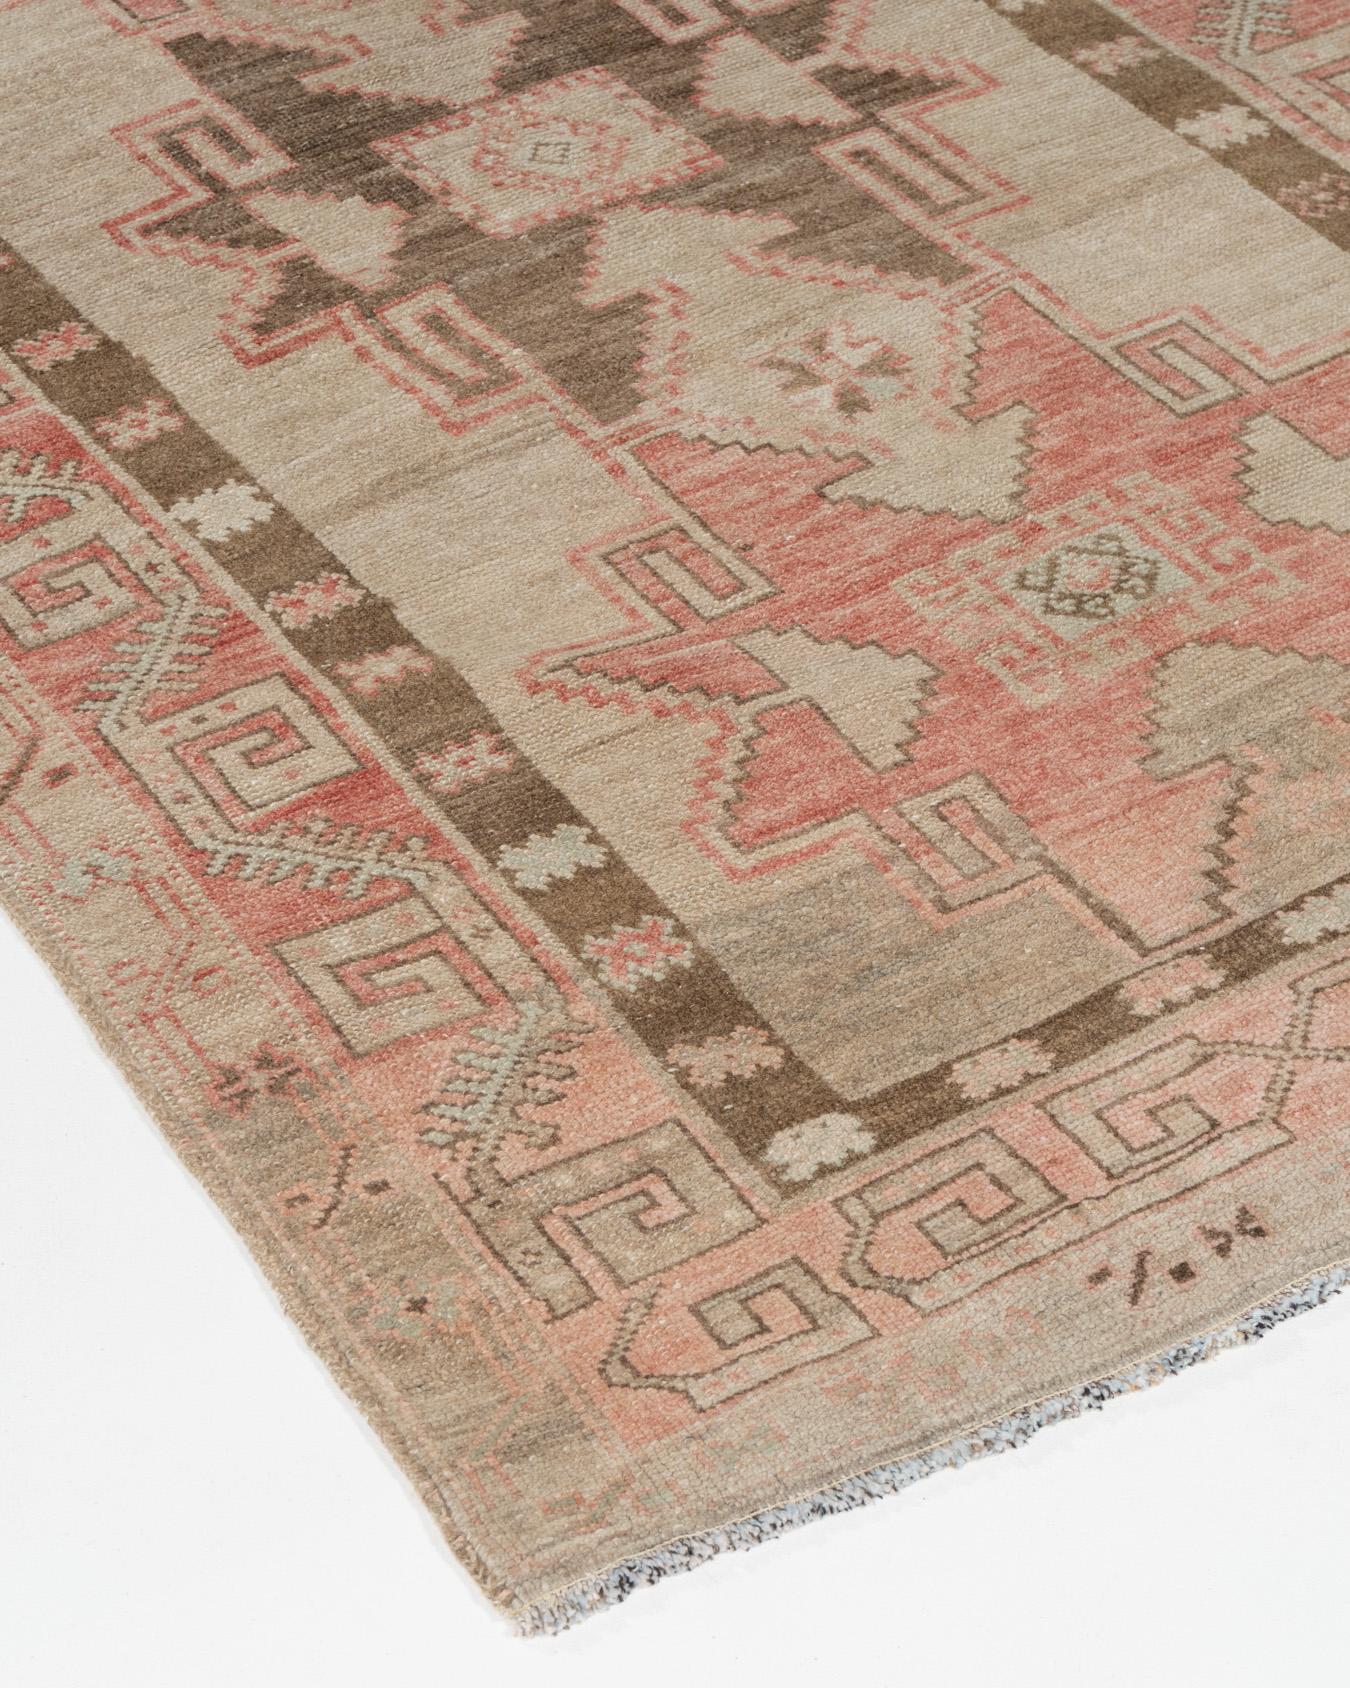 Vintage Turkish oushak Runner 3'10 x 12'3. Tissé à la main en Turquie où le tissage de tapis est une culture plutôt qu'un commerce. Les tapis de Turquie sont connus pour la haute qualité de leur laine, leurs beaux motifs et leurs couleurs chaudes.